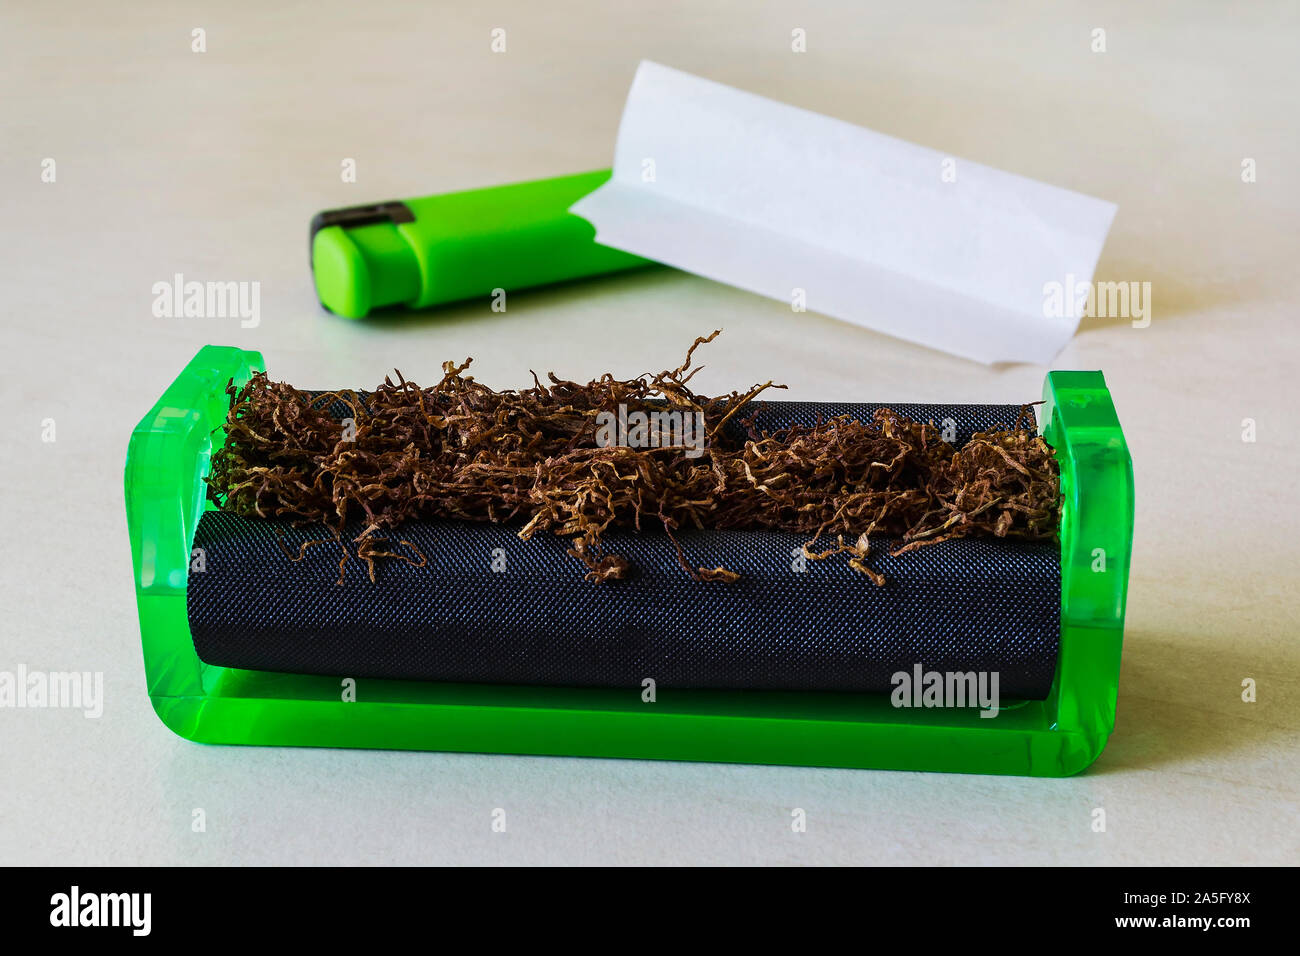 Verde máquina laminadora de cigarrillos con tabaco, papel de fumar y encendedor verde sobre una tabla en blanco. Hacer los cigarrillos con tabaco de pipa en casa. Foto de stock